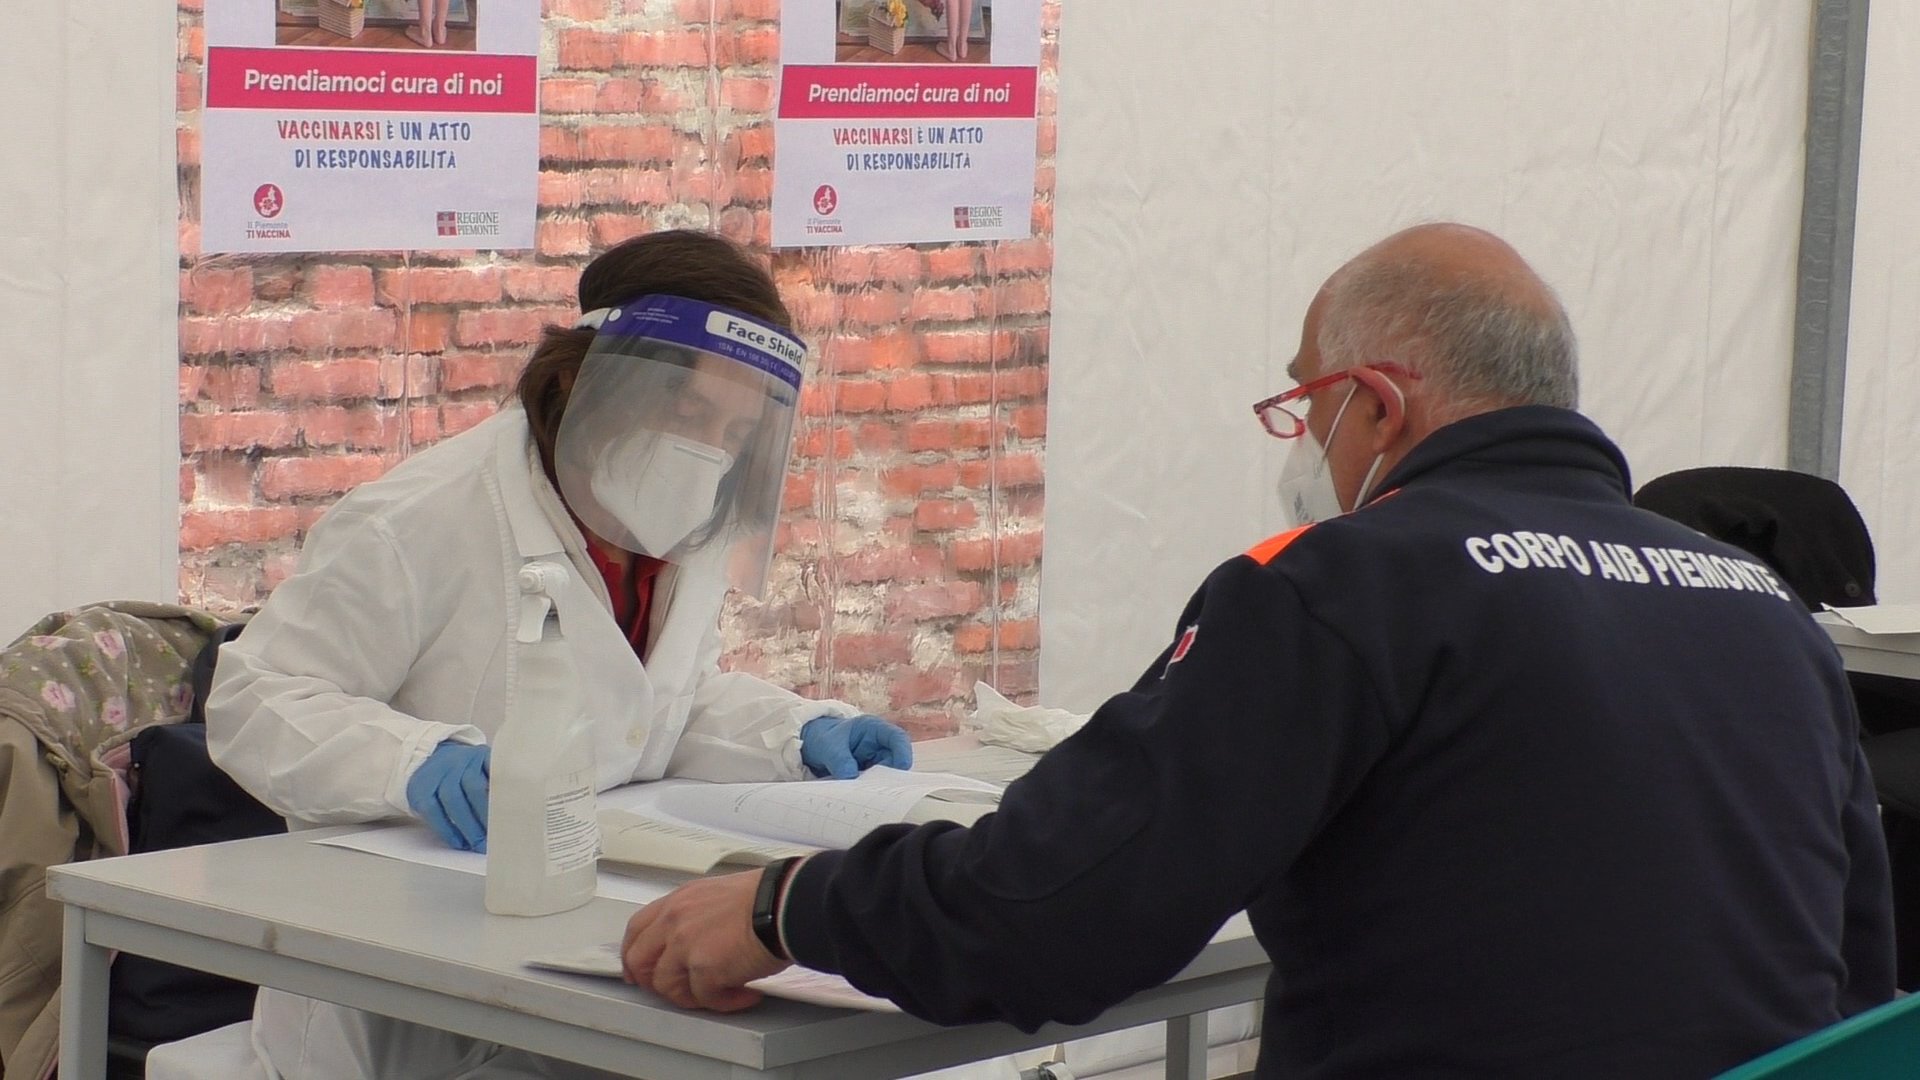 In Piemonte oggi 22.647 vaccinati contro il covid